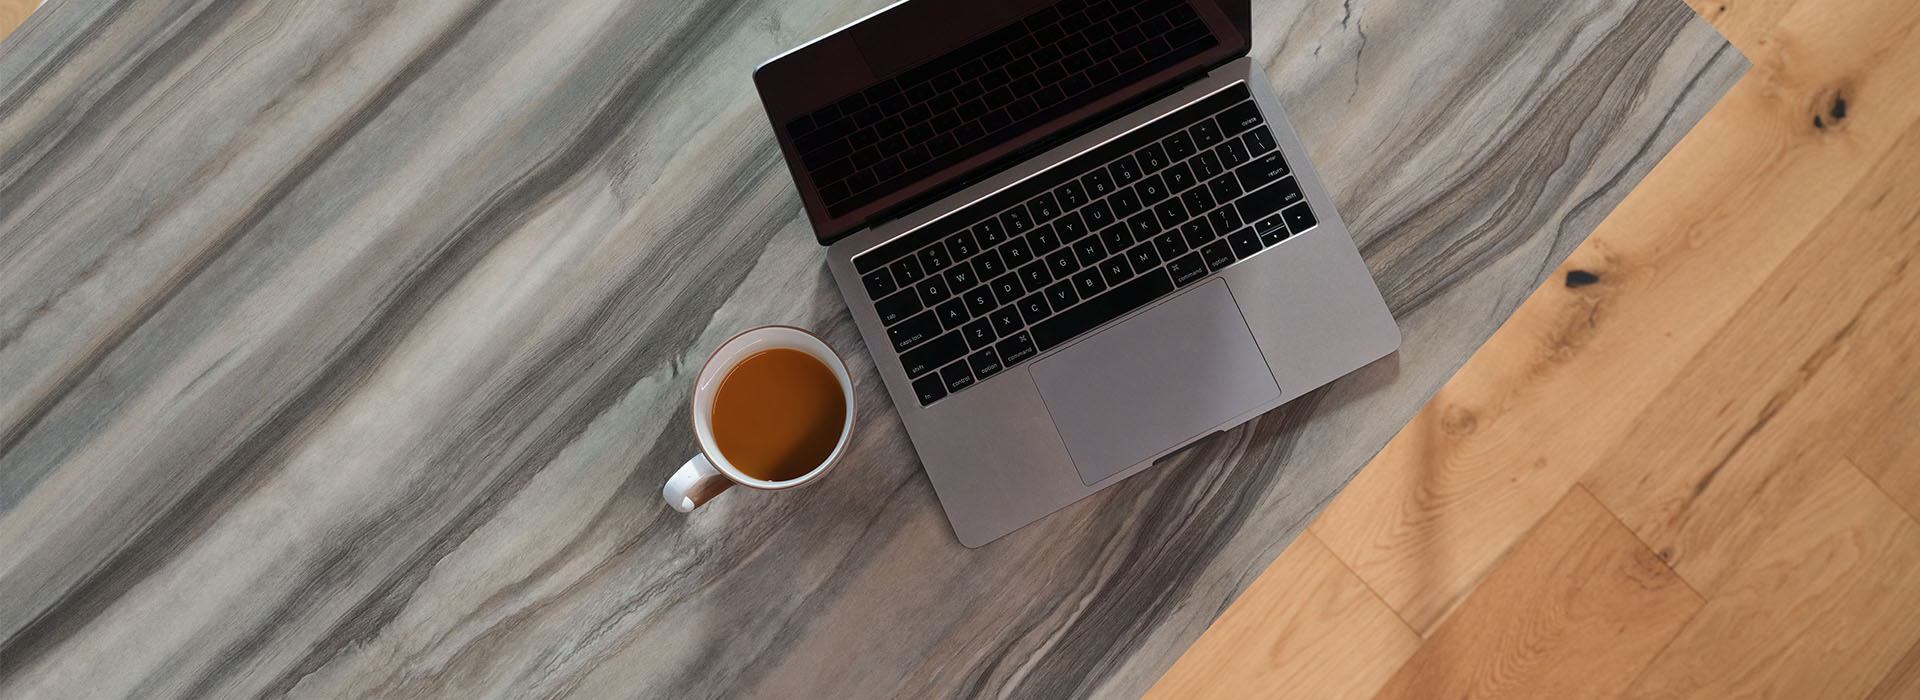 Acercamiento a la cubierta de Formica estilo mármol de un escritorio con laptop y café